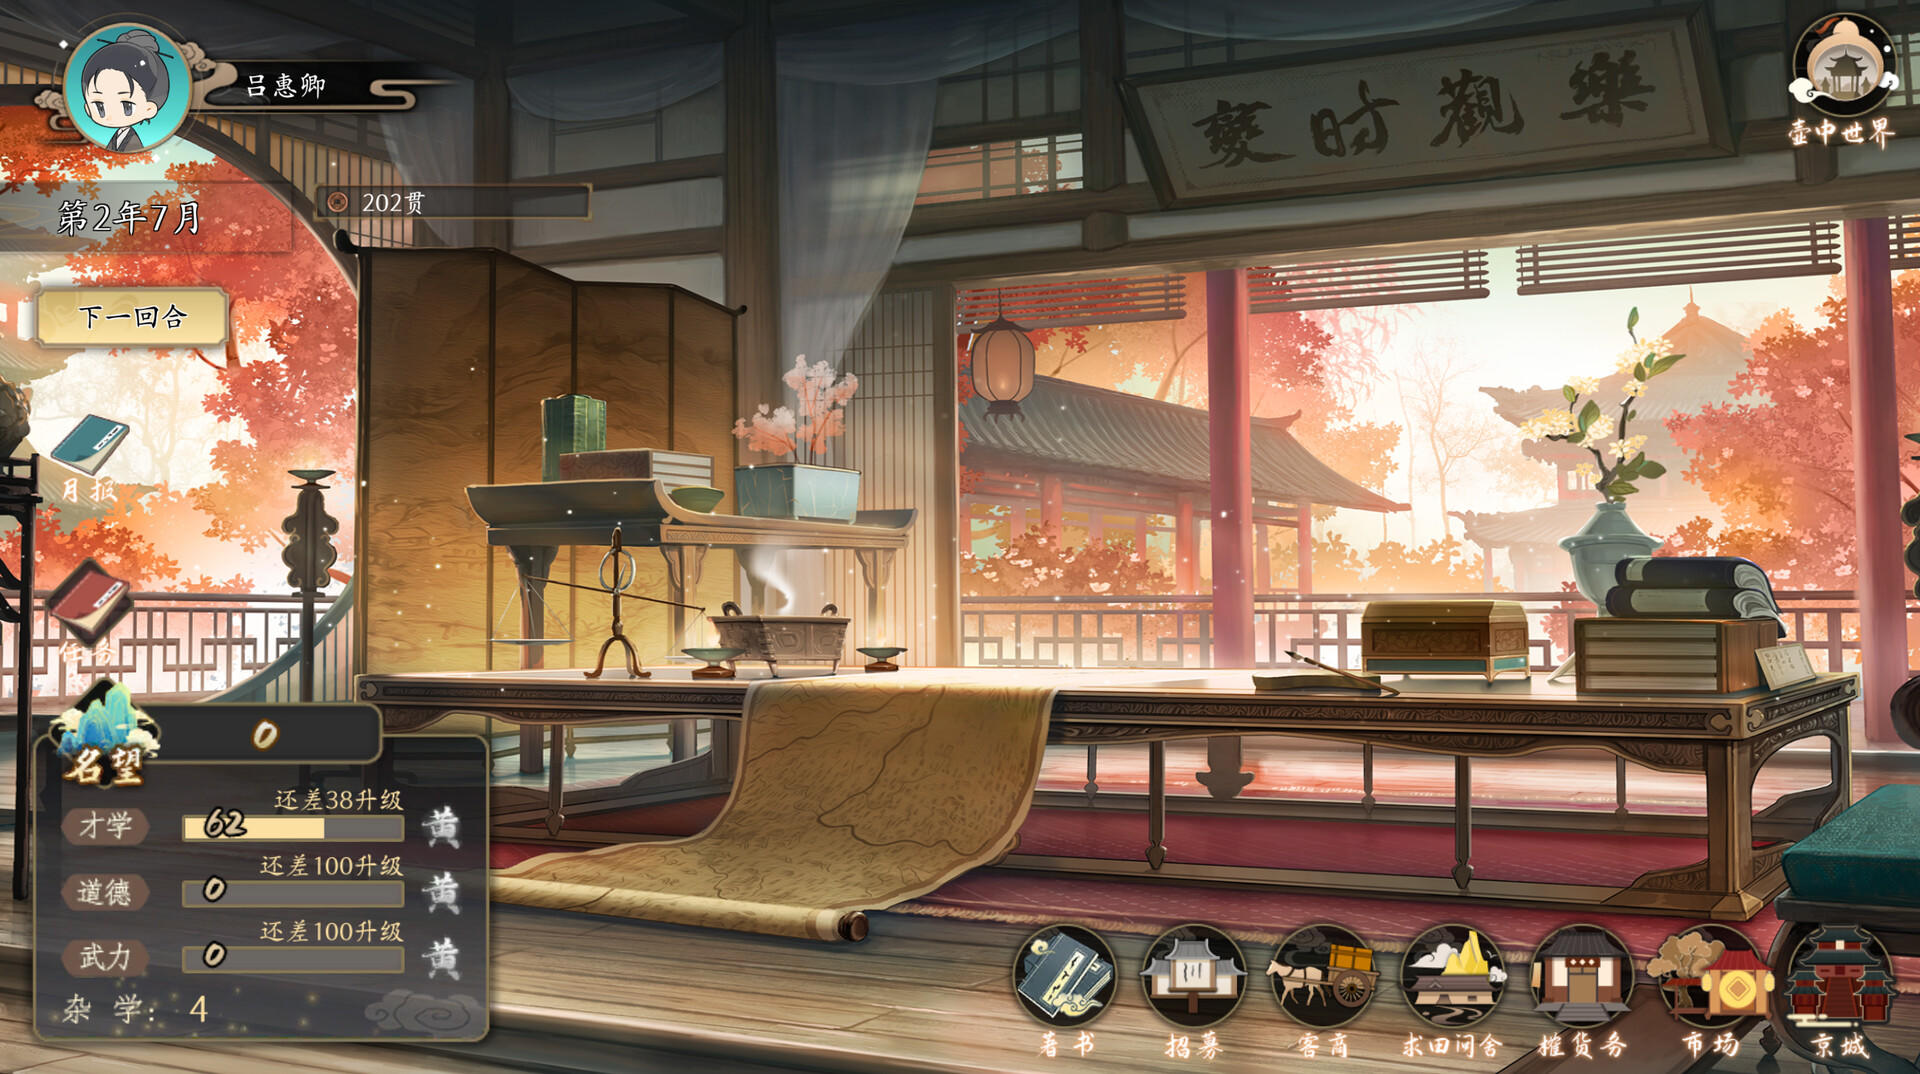 Screenshot 1 of กวงจีแห่งราชวงศ์ซ่ง 